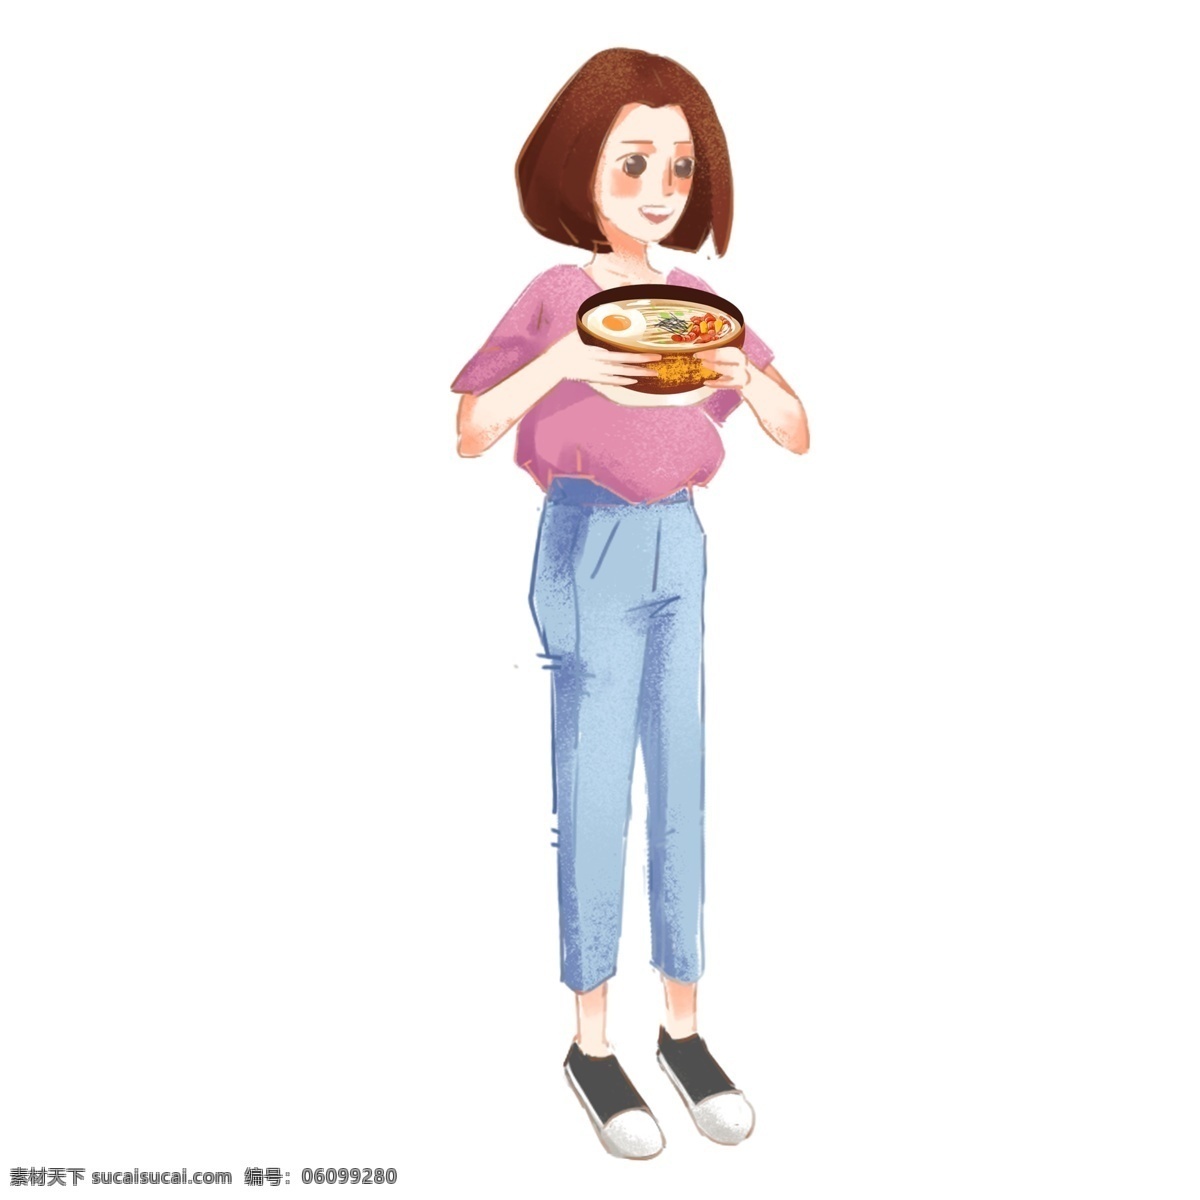 端 食物 女孩 商用 元素 卡通 可爱 人物 插画 小清新女生